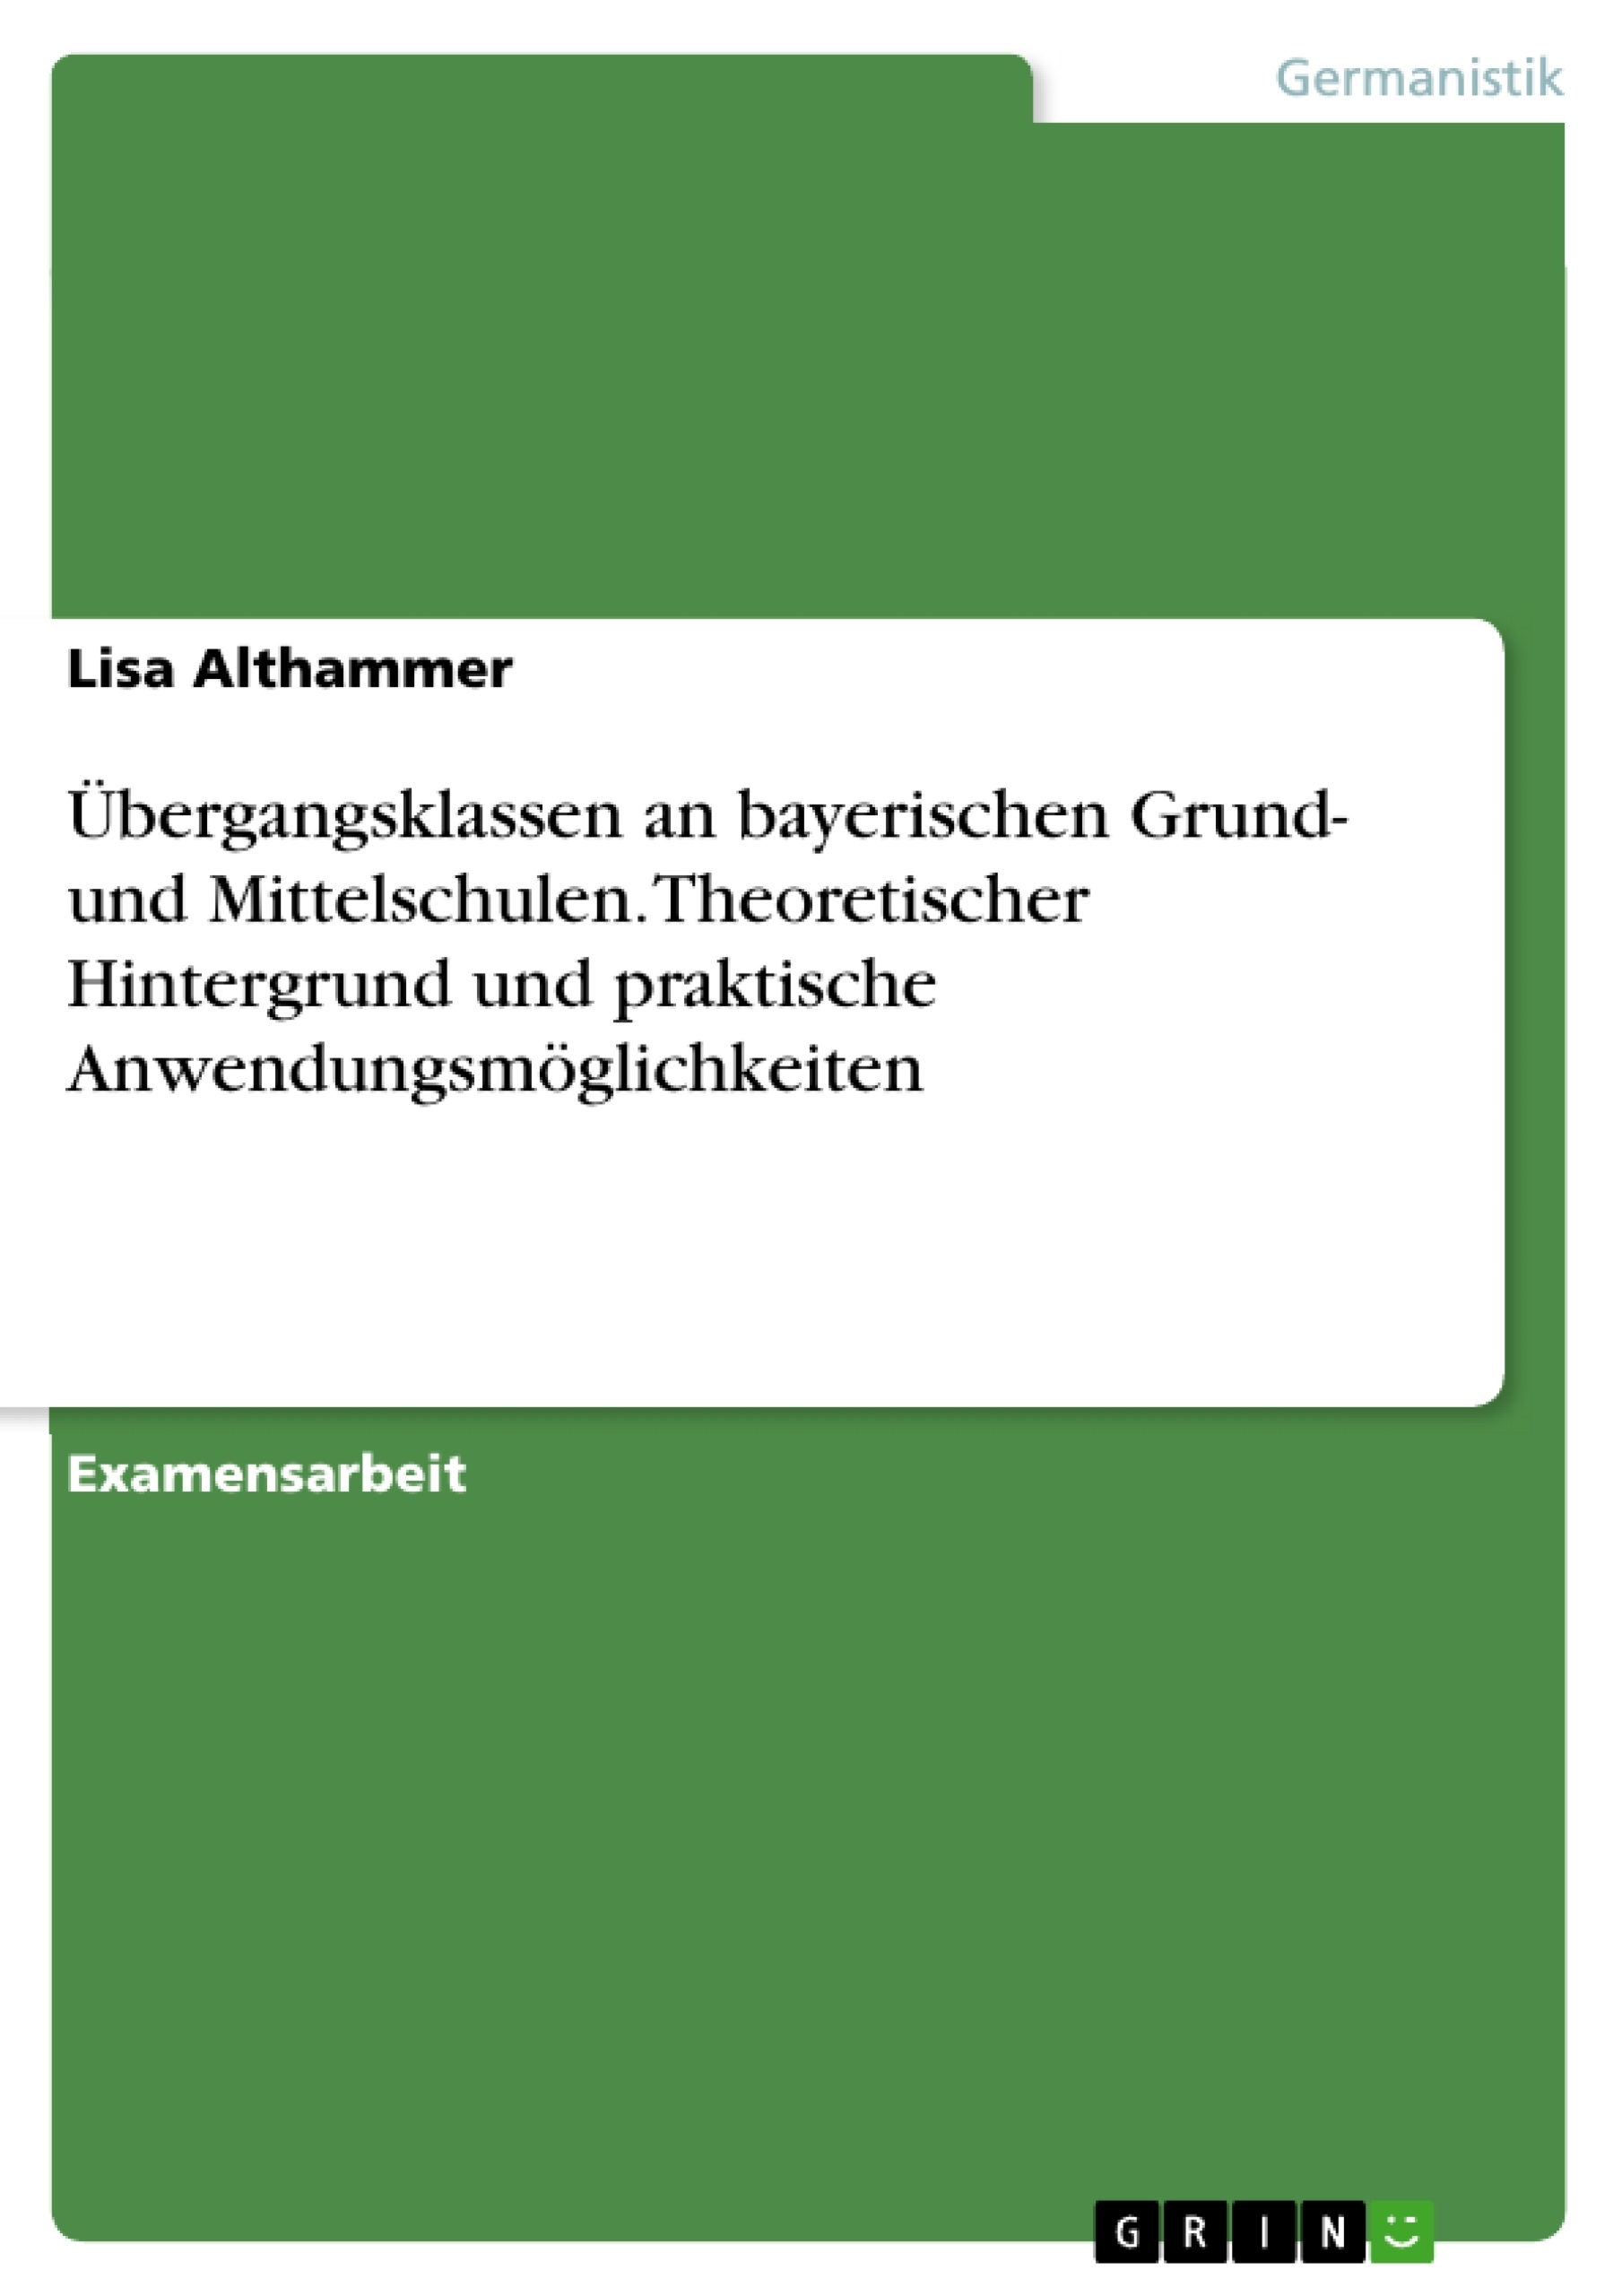 Título: Übergangsklassen an bayerischen Grund- und Mittelschulen. Theoretischer Hintergrund und praktische Anwendungsmöglichkeiten